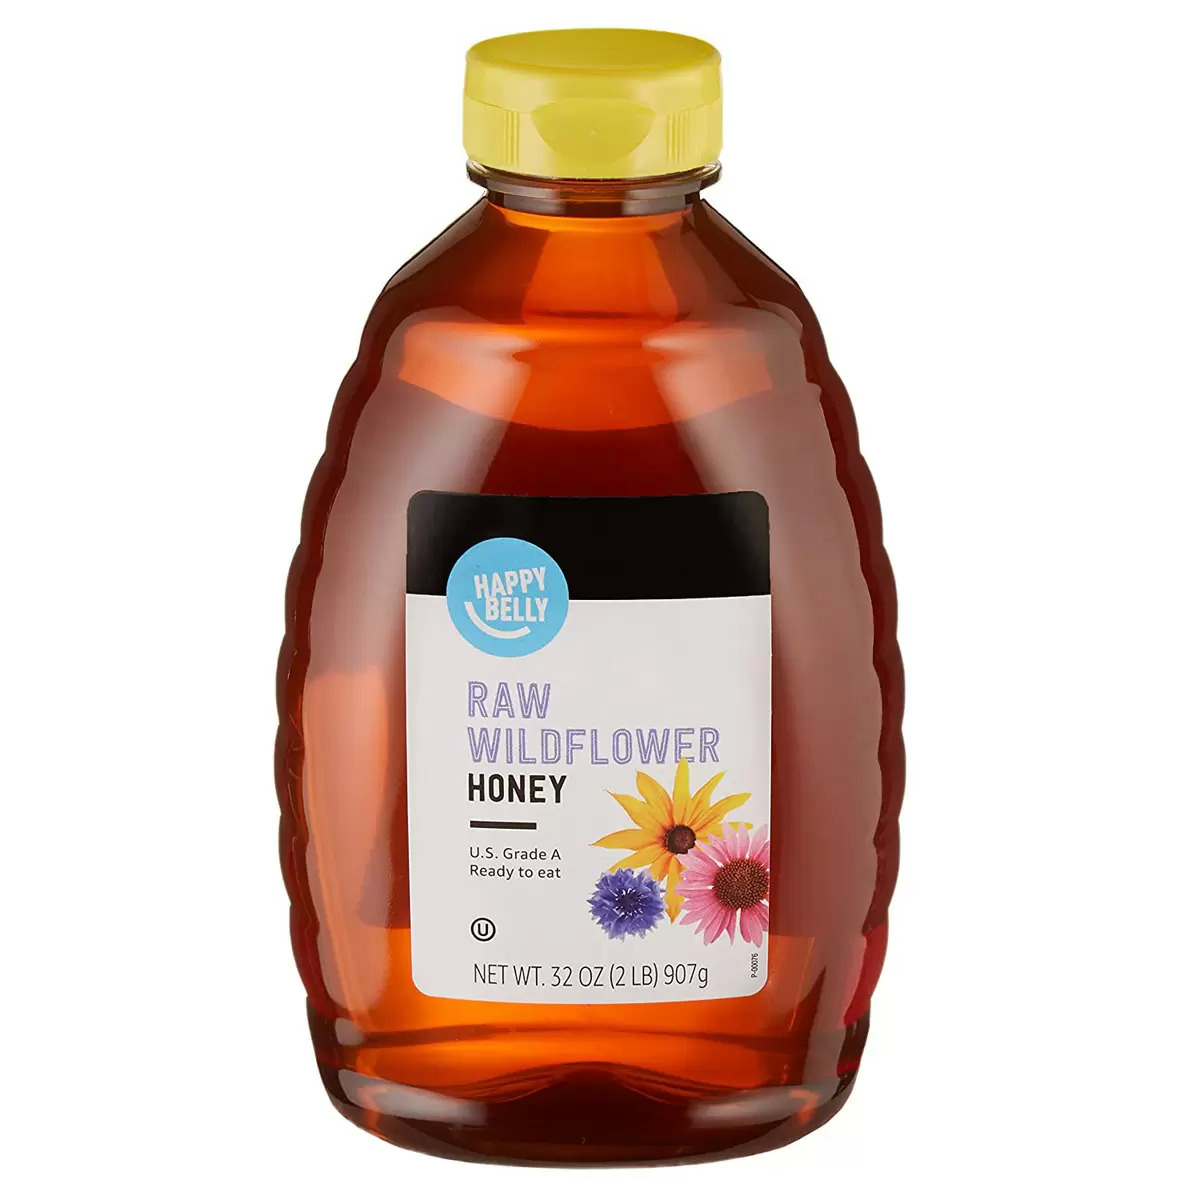 Happy Belly Raw Wildflower Honey, 32 oz $5.31